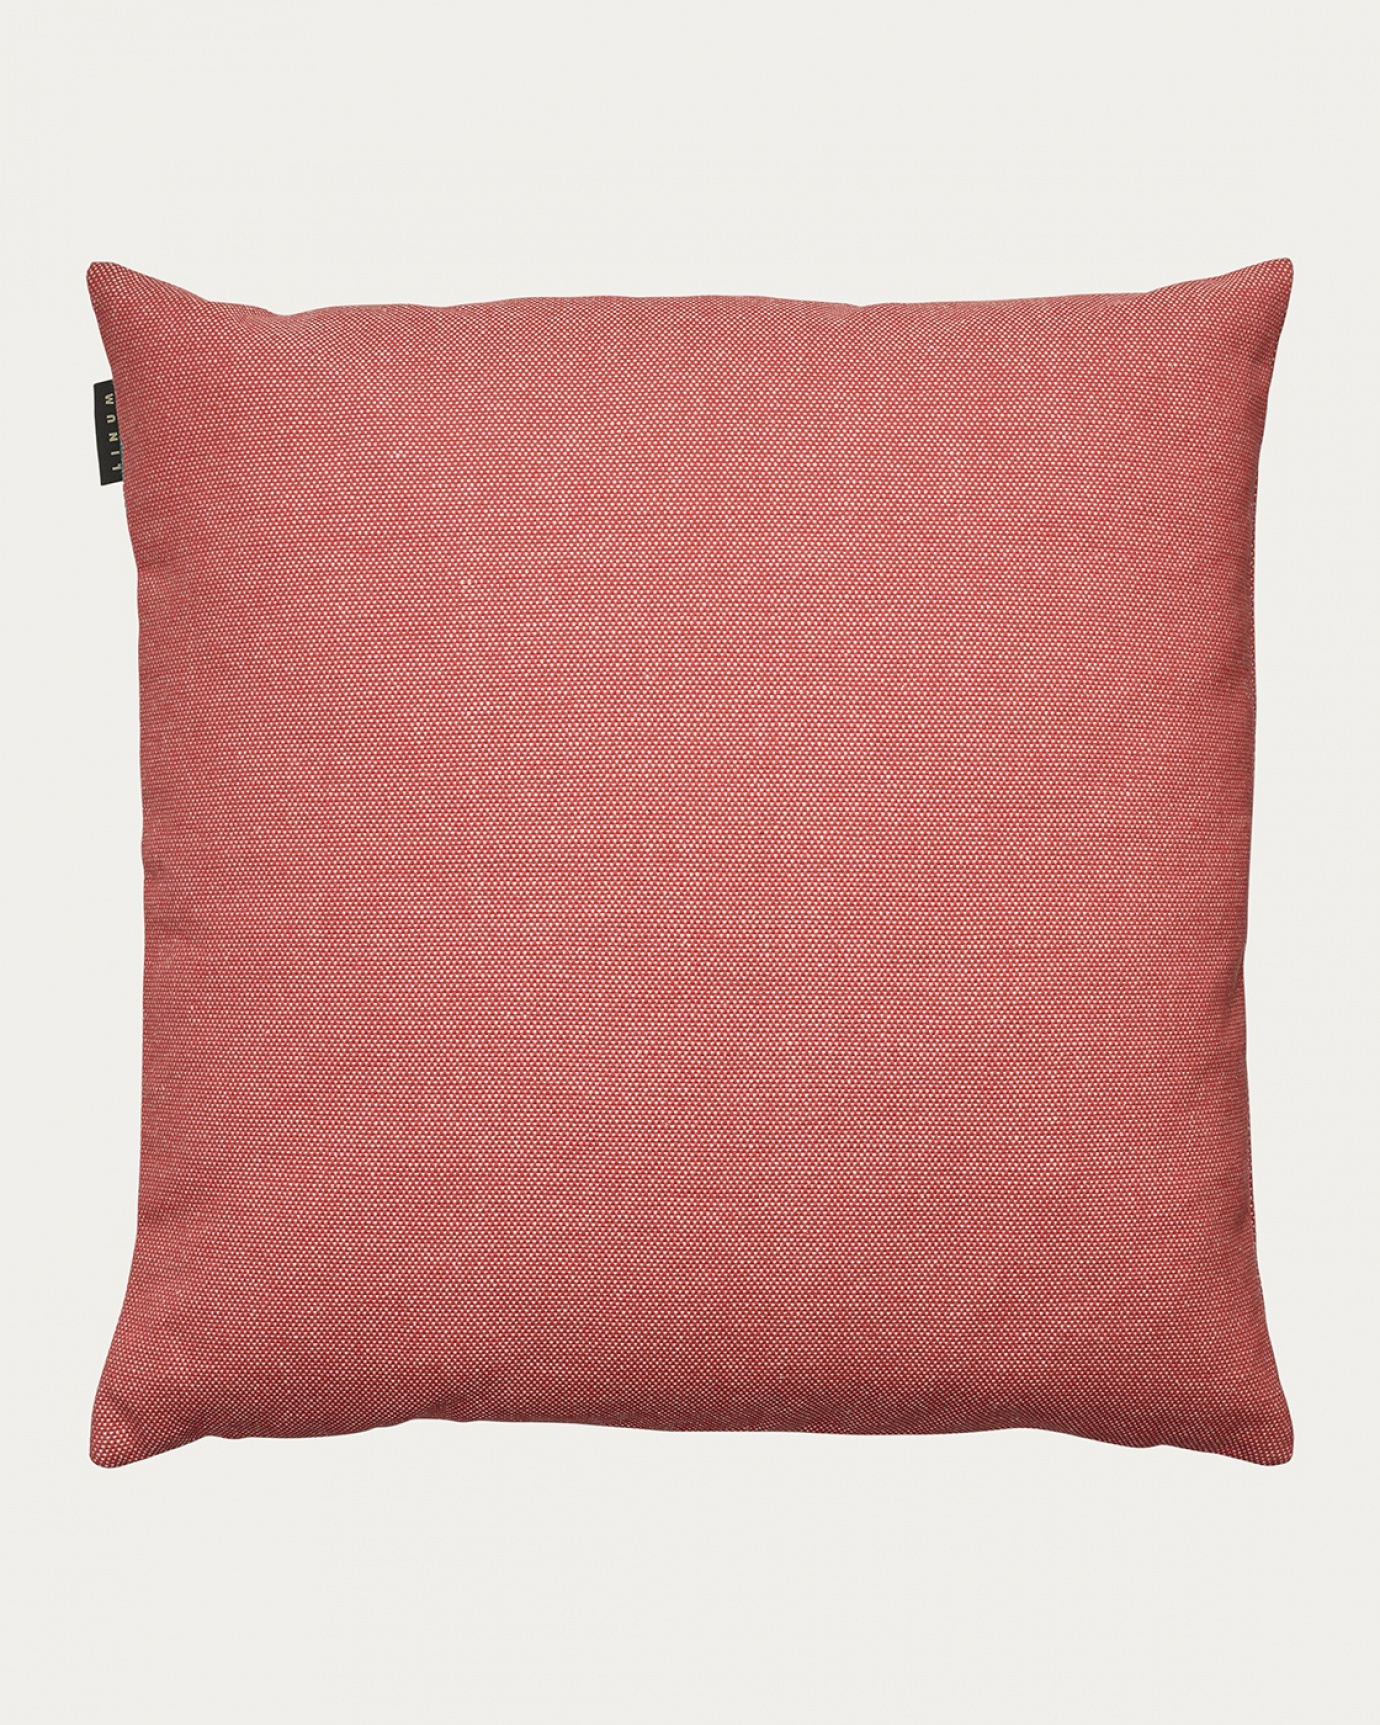 Image du produit housse de coussin PEPPER coral rouge en coton doux de LINUM DESIGN. Facile à laver et durable pendant des générations. Taille 60 x 60 cm.